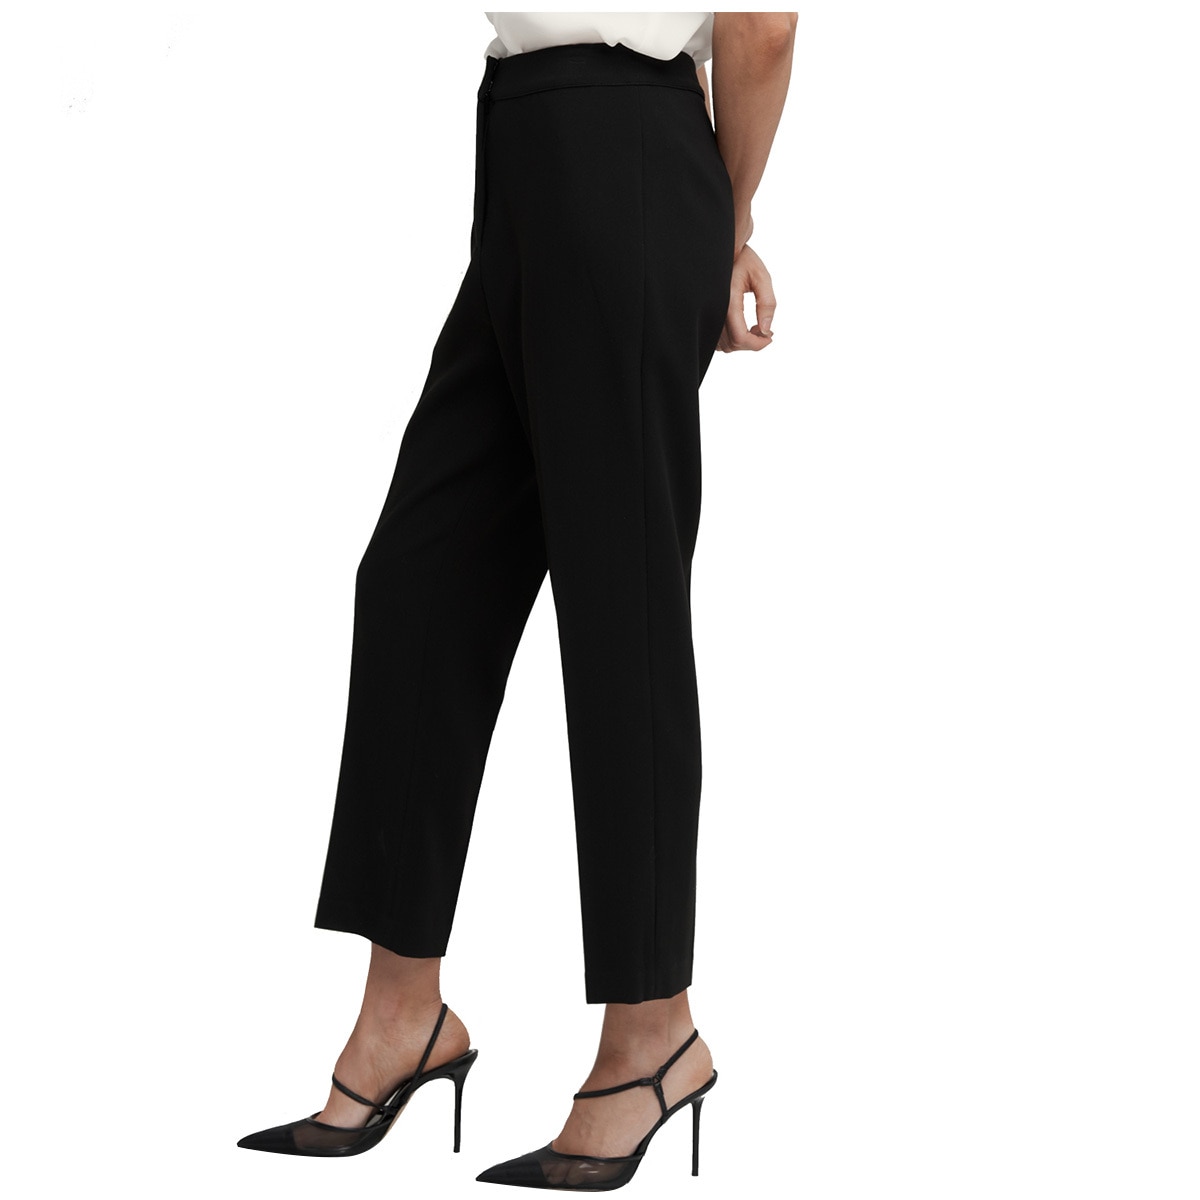 Cooper St Women's Suit Pant - Black